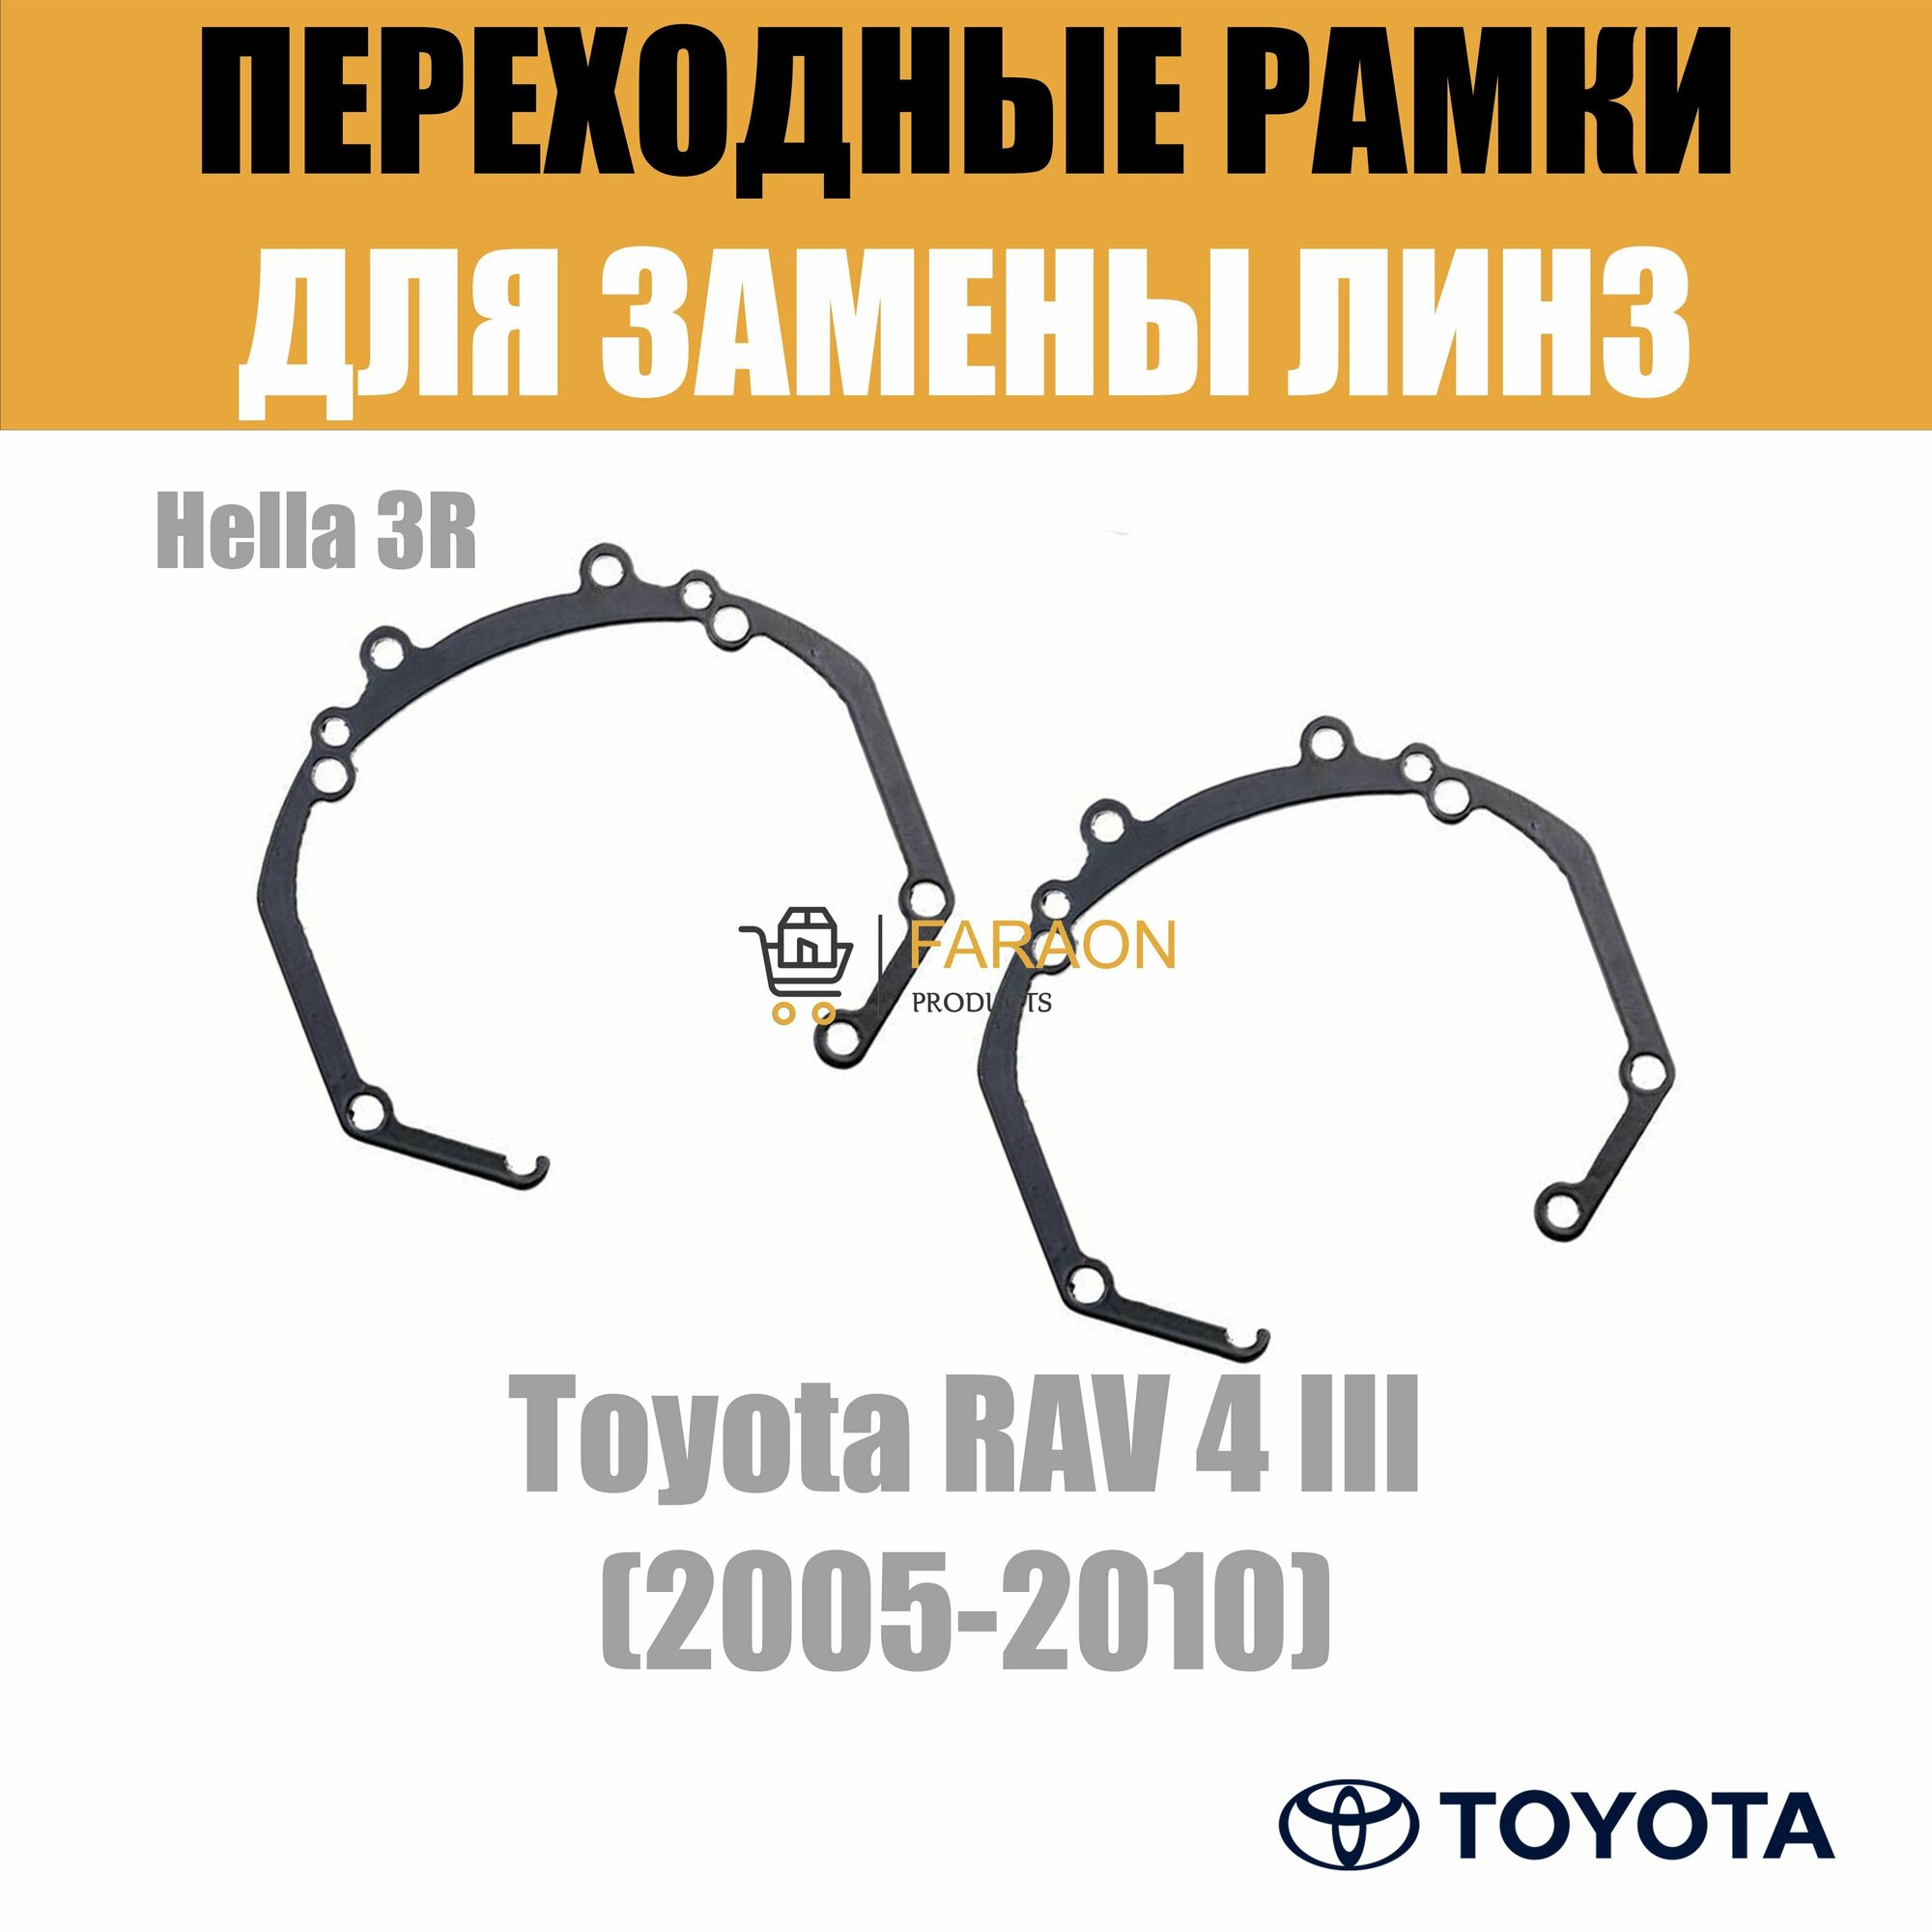 Переходные рамки №36 для линз Toyota RAV 4 3 2005-2010 под модуль Hella 3R (Комплект, 2шт)